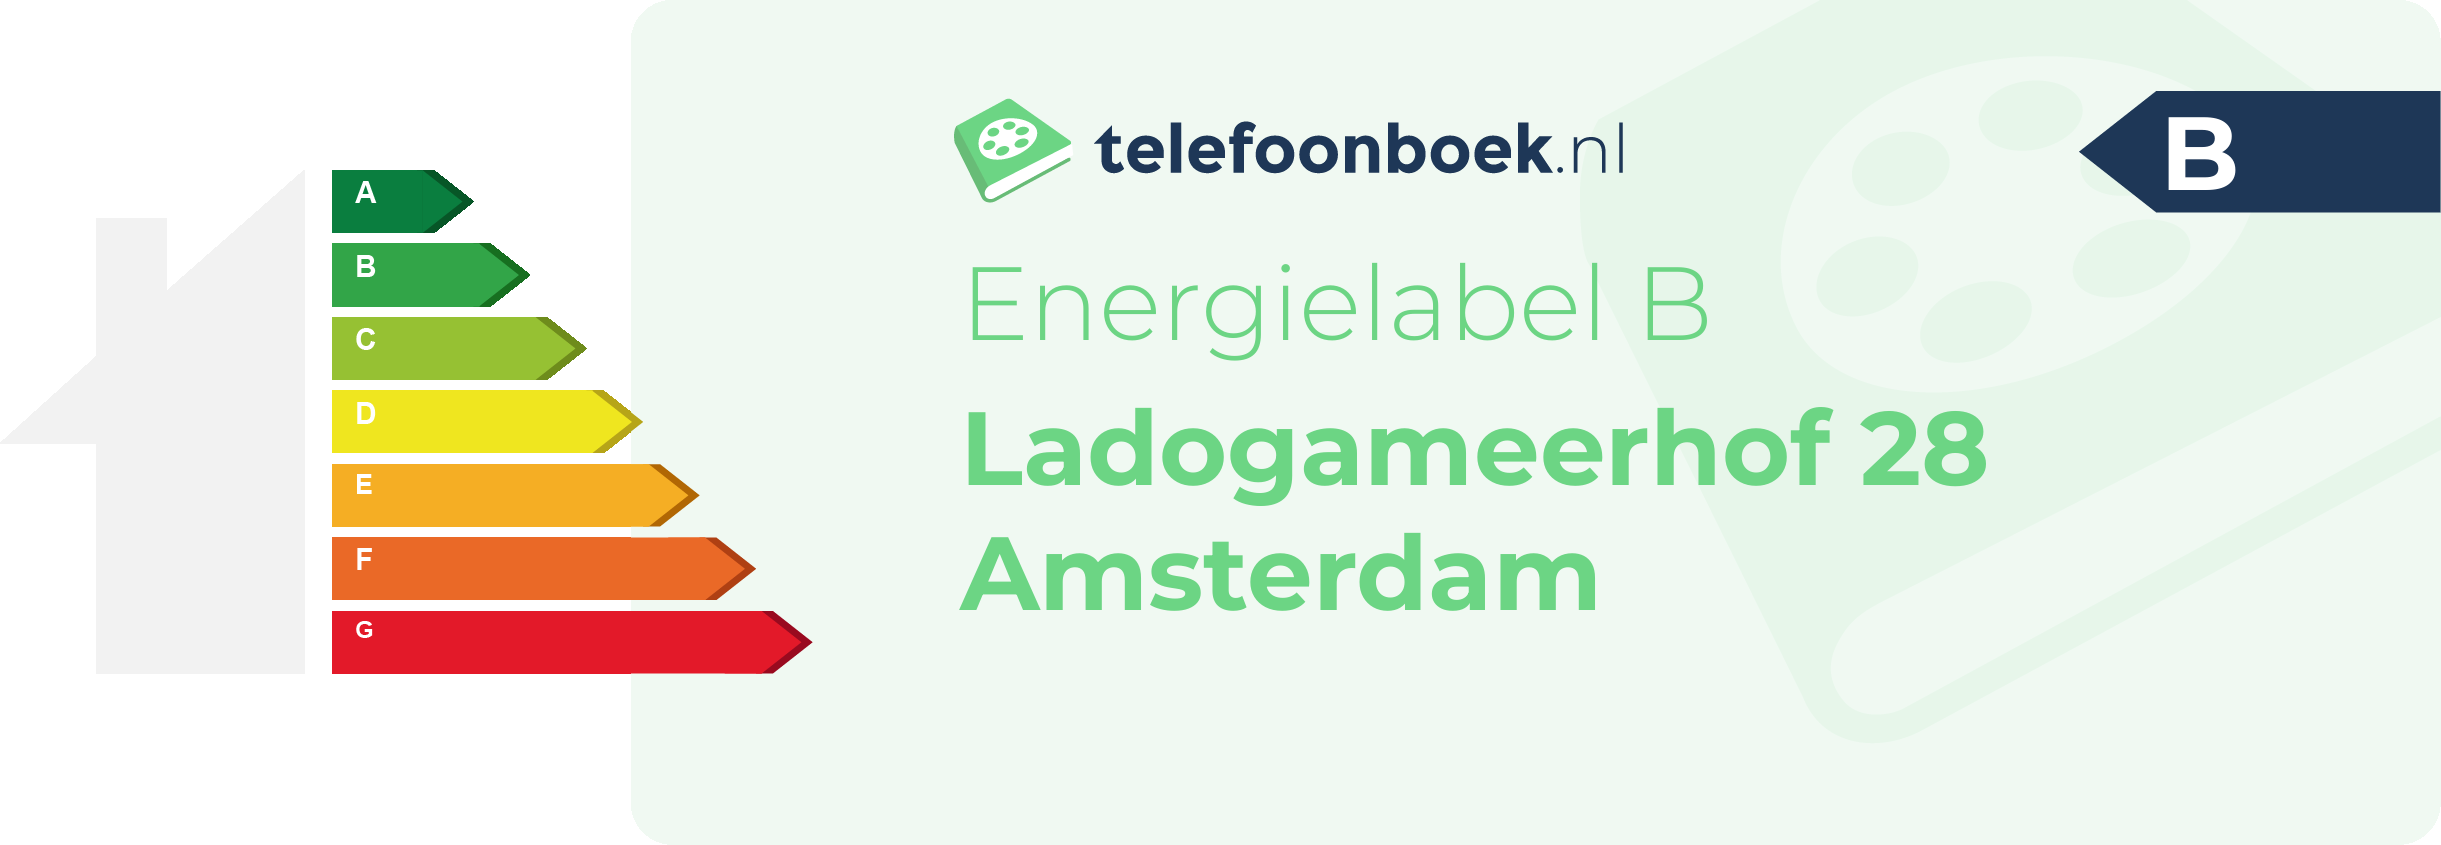 Energielabel Ladogameerhof 28 Amsterdam